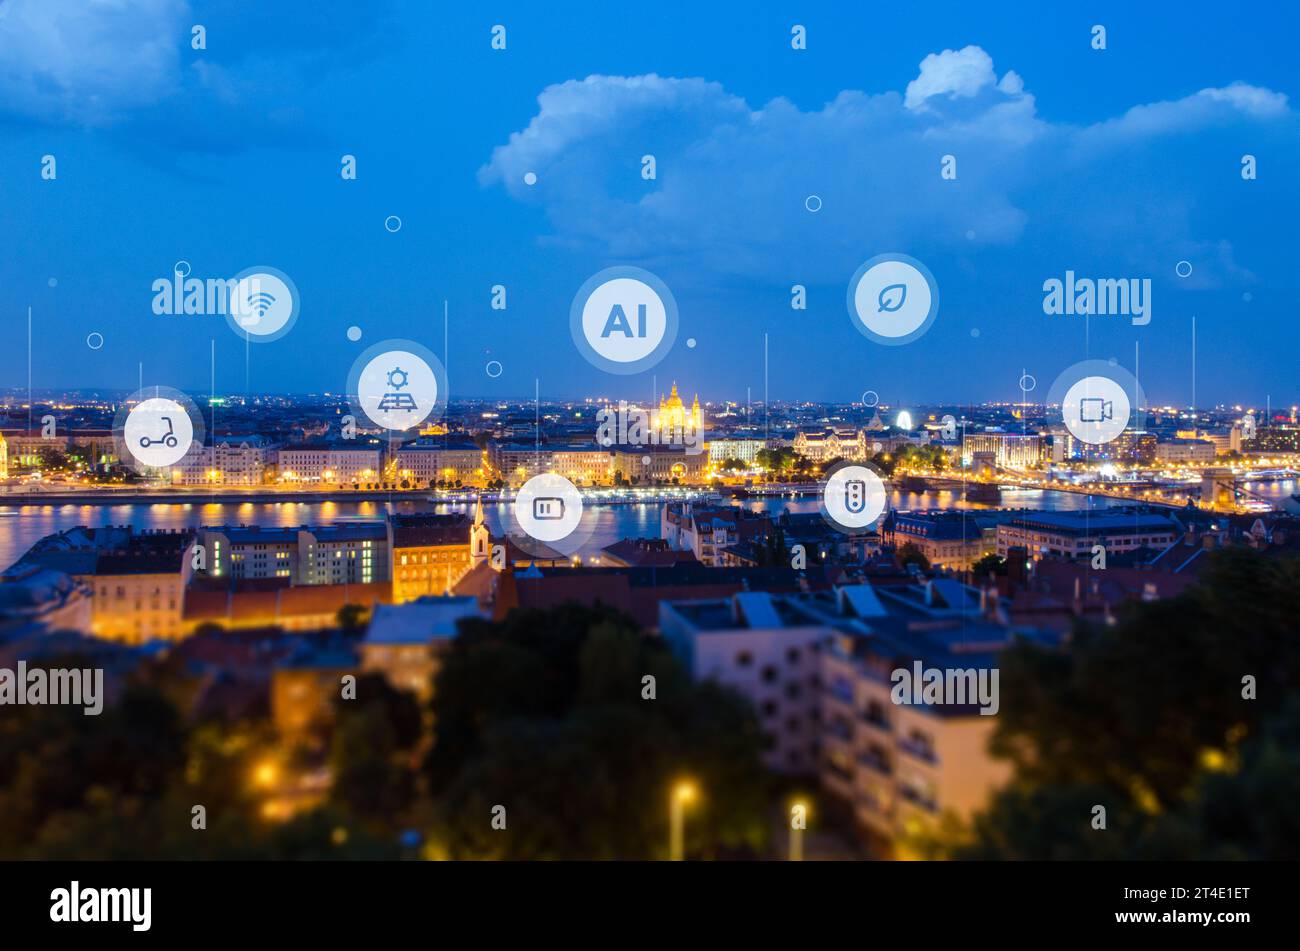 Verwaltung einer intelligenten Stadt mit künstlicher Intelligenz. Stadtpanorama mit intelligenten Stadtsymbolen Stockfoto